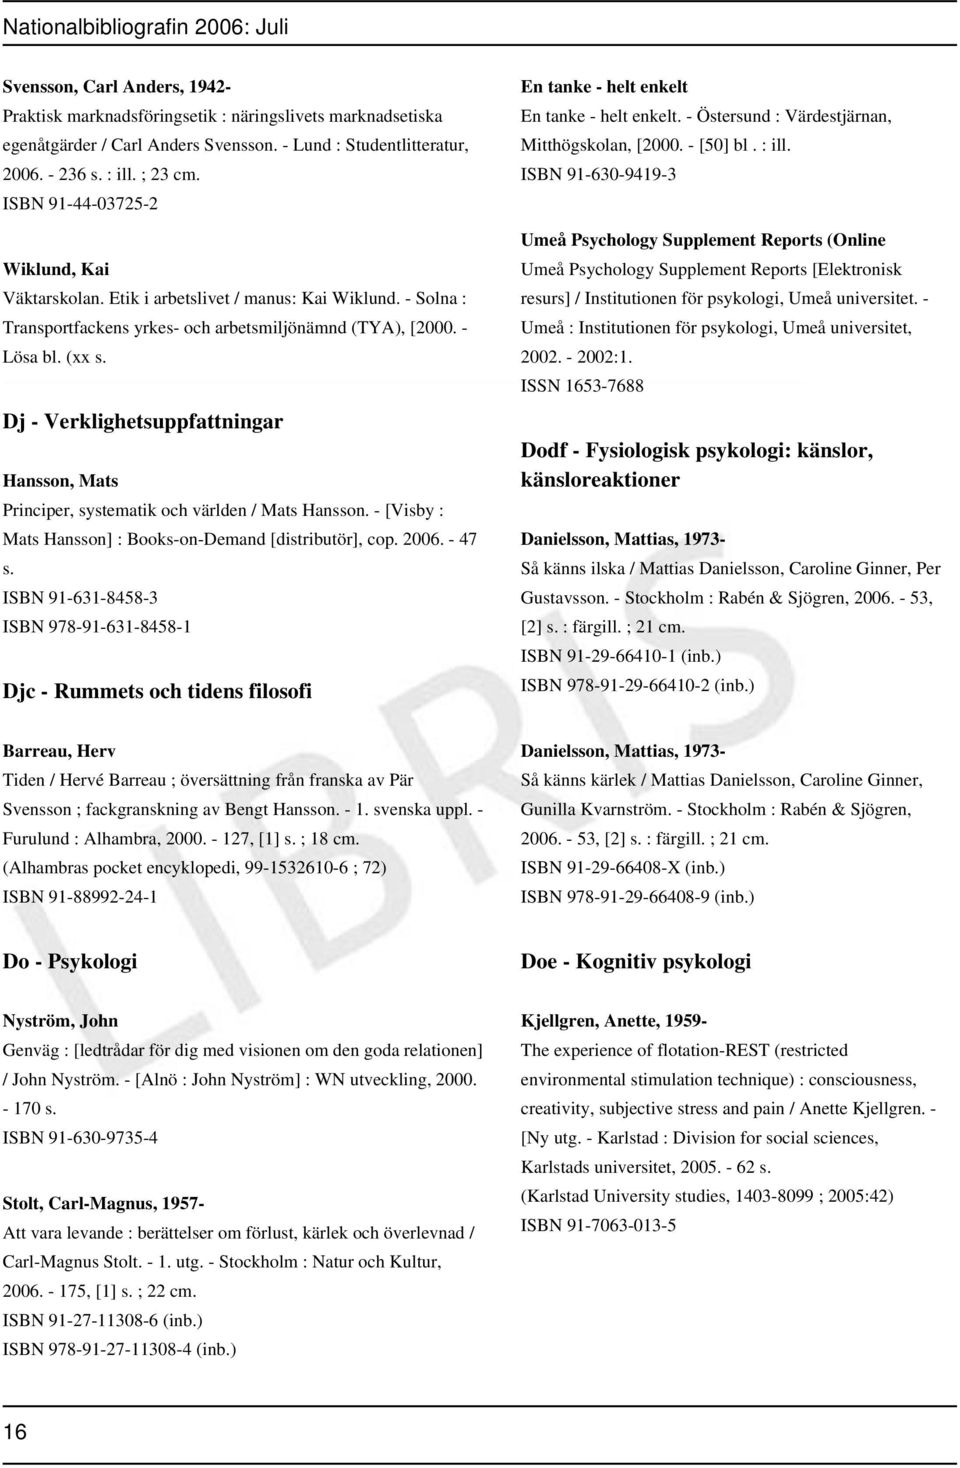 Dj - Verklighetsuppfattningar Hansson, Mats Principer, systematik och världen / Mats Hansson. - [Visby : Mats Hansson] : Books-on-Demand [distributör], cop. 2006. - 47 s.